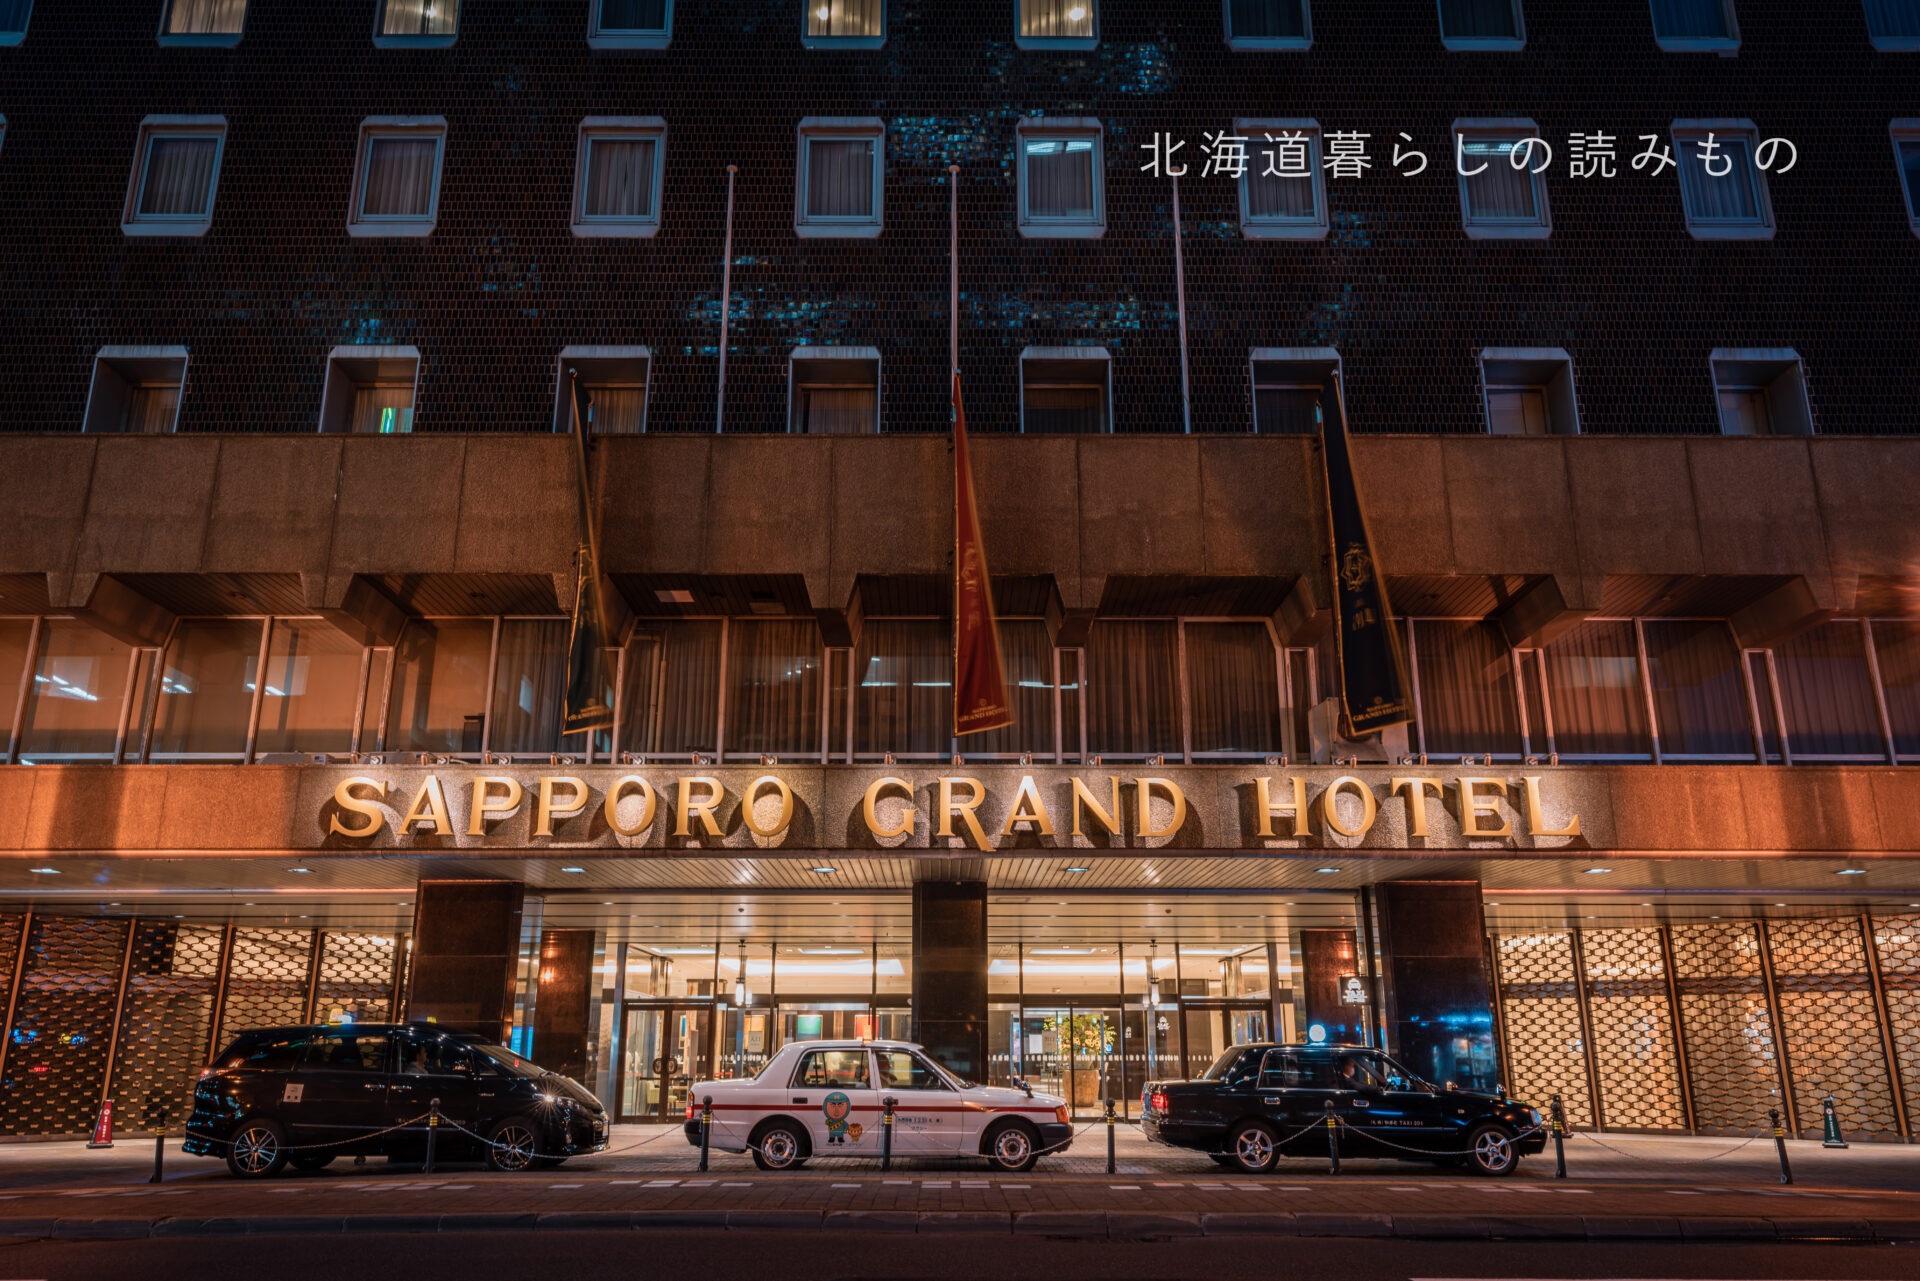 札幌グランドホテル Sapporo Grand Hotel